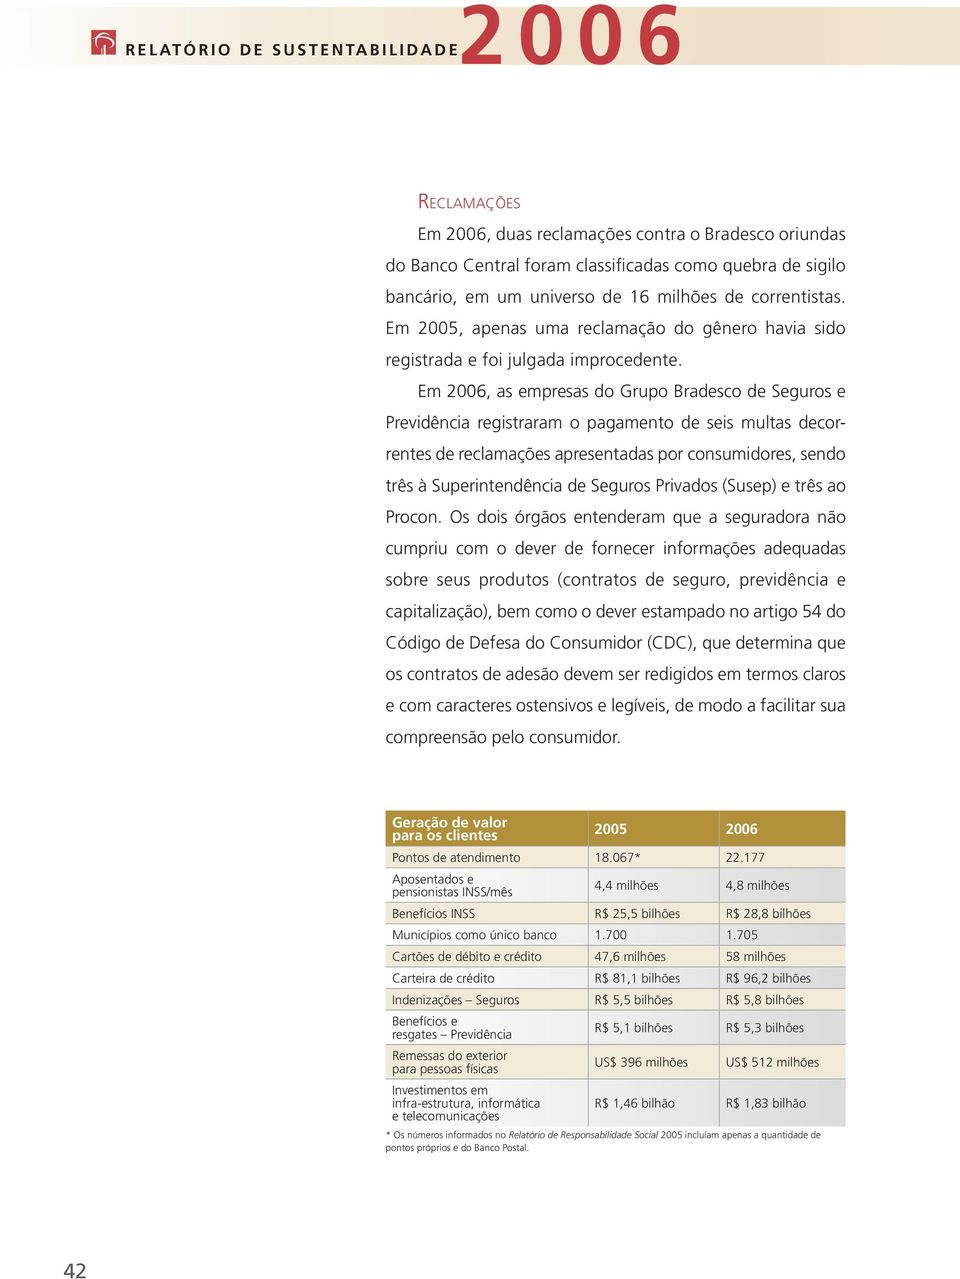 Em 2006, as empresas do Grupo Bradesco de Seguros e Previdência registraram o pagamento de seis multas decorrentes de reclamações apresentadas por consumidores, sendo três à Superintendência de